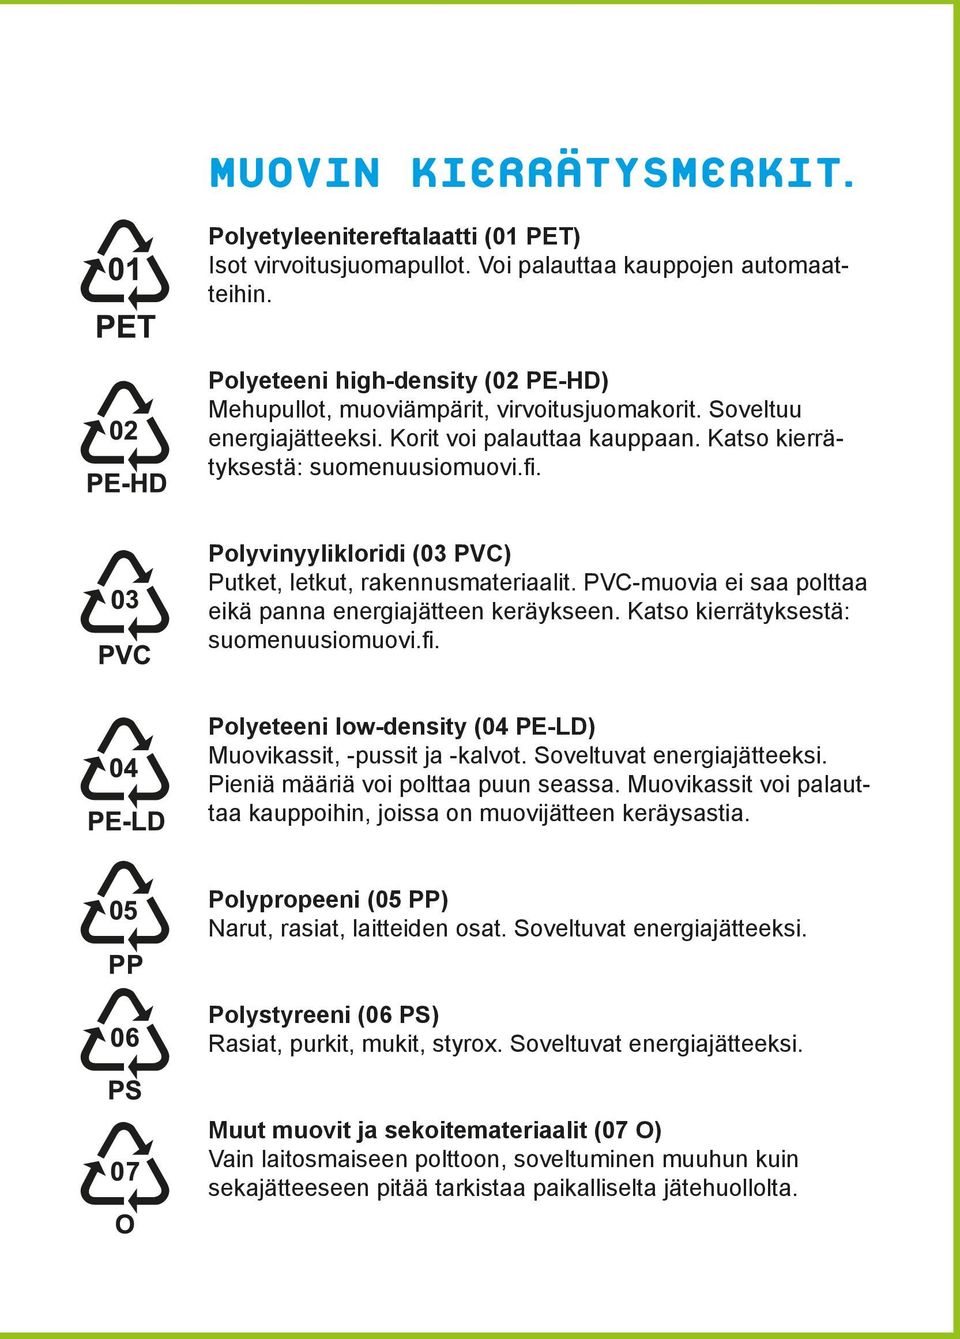 Polyvinyylikloridi (03 PVC) Putket, letkut, rakennusmateriaalit. PVC-muovia ei saa polttaa eikä panna energiajätteen keräykseen. Katso kierrätyksestä: suomenuusiomuovi.fi.